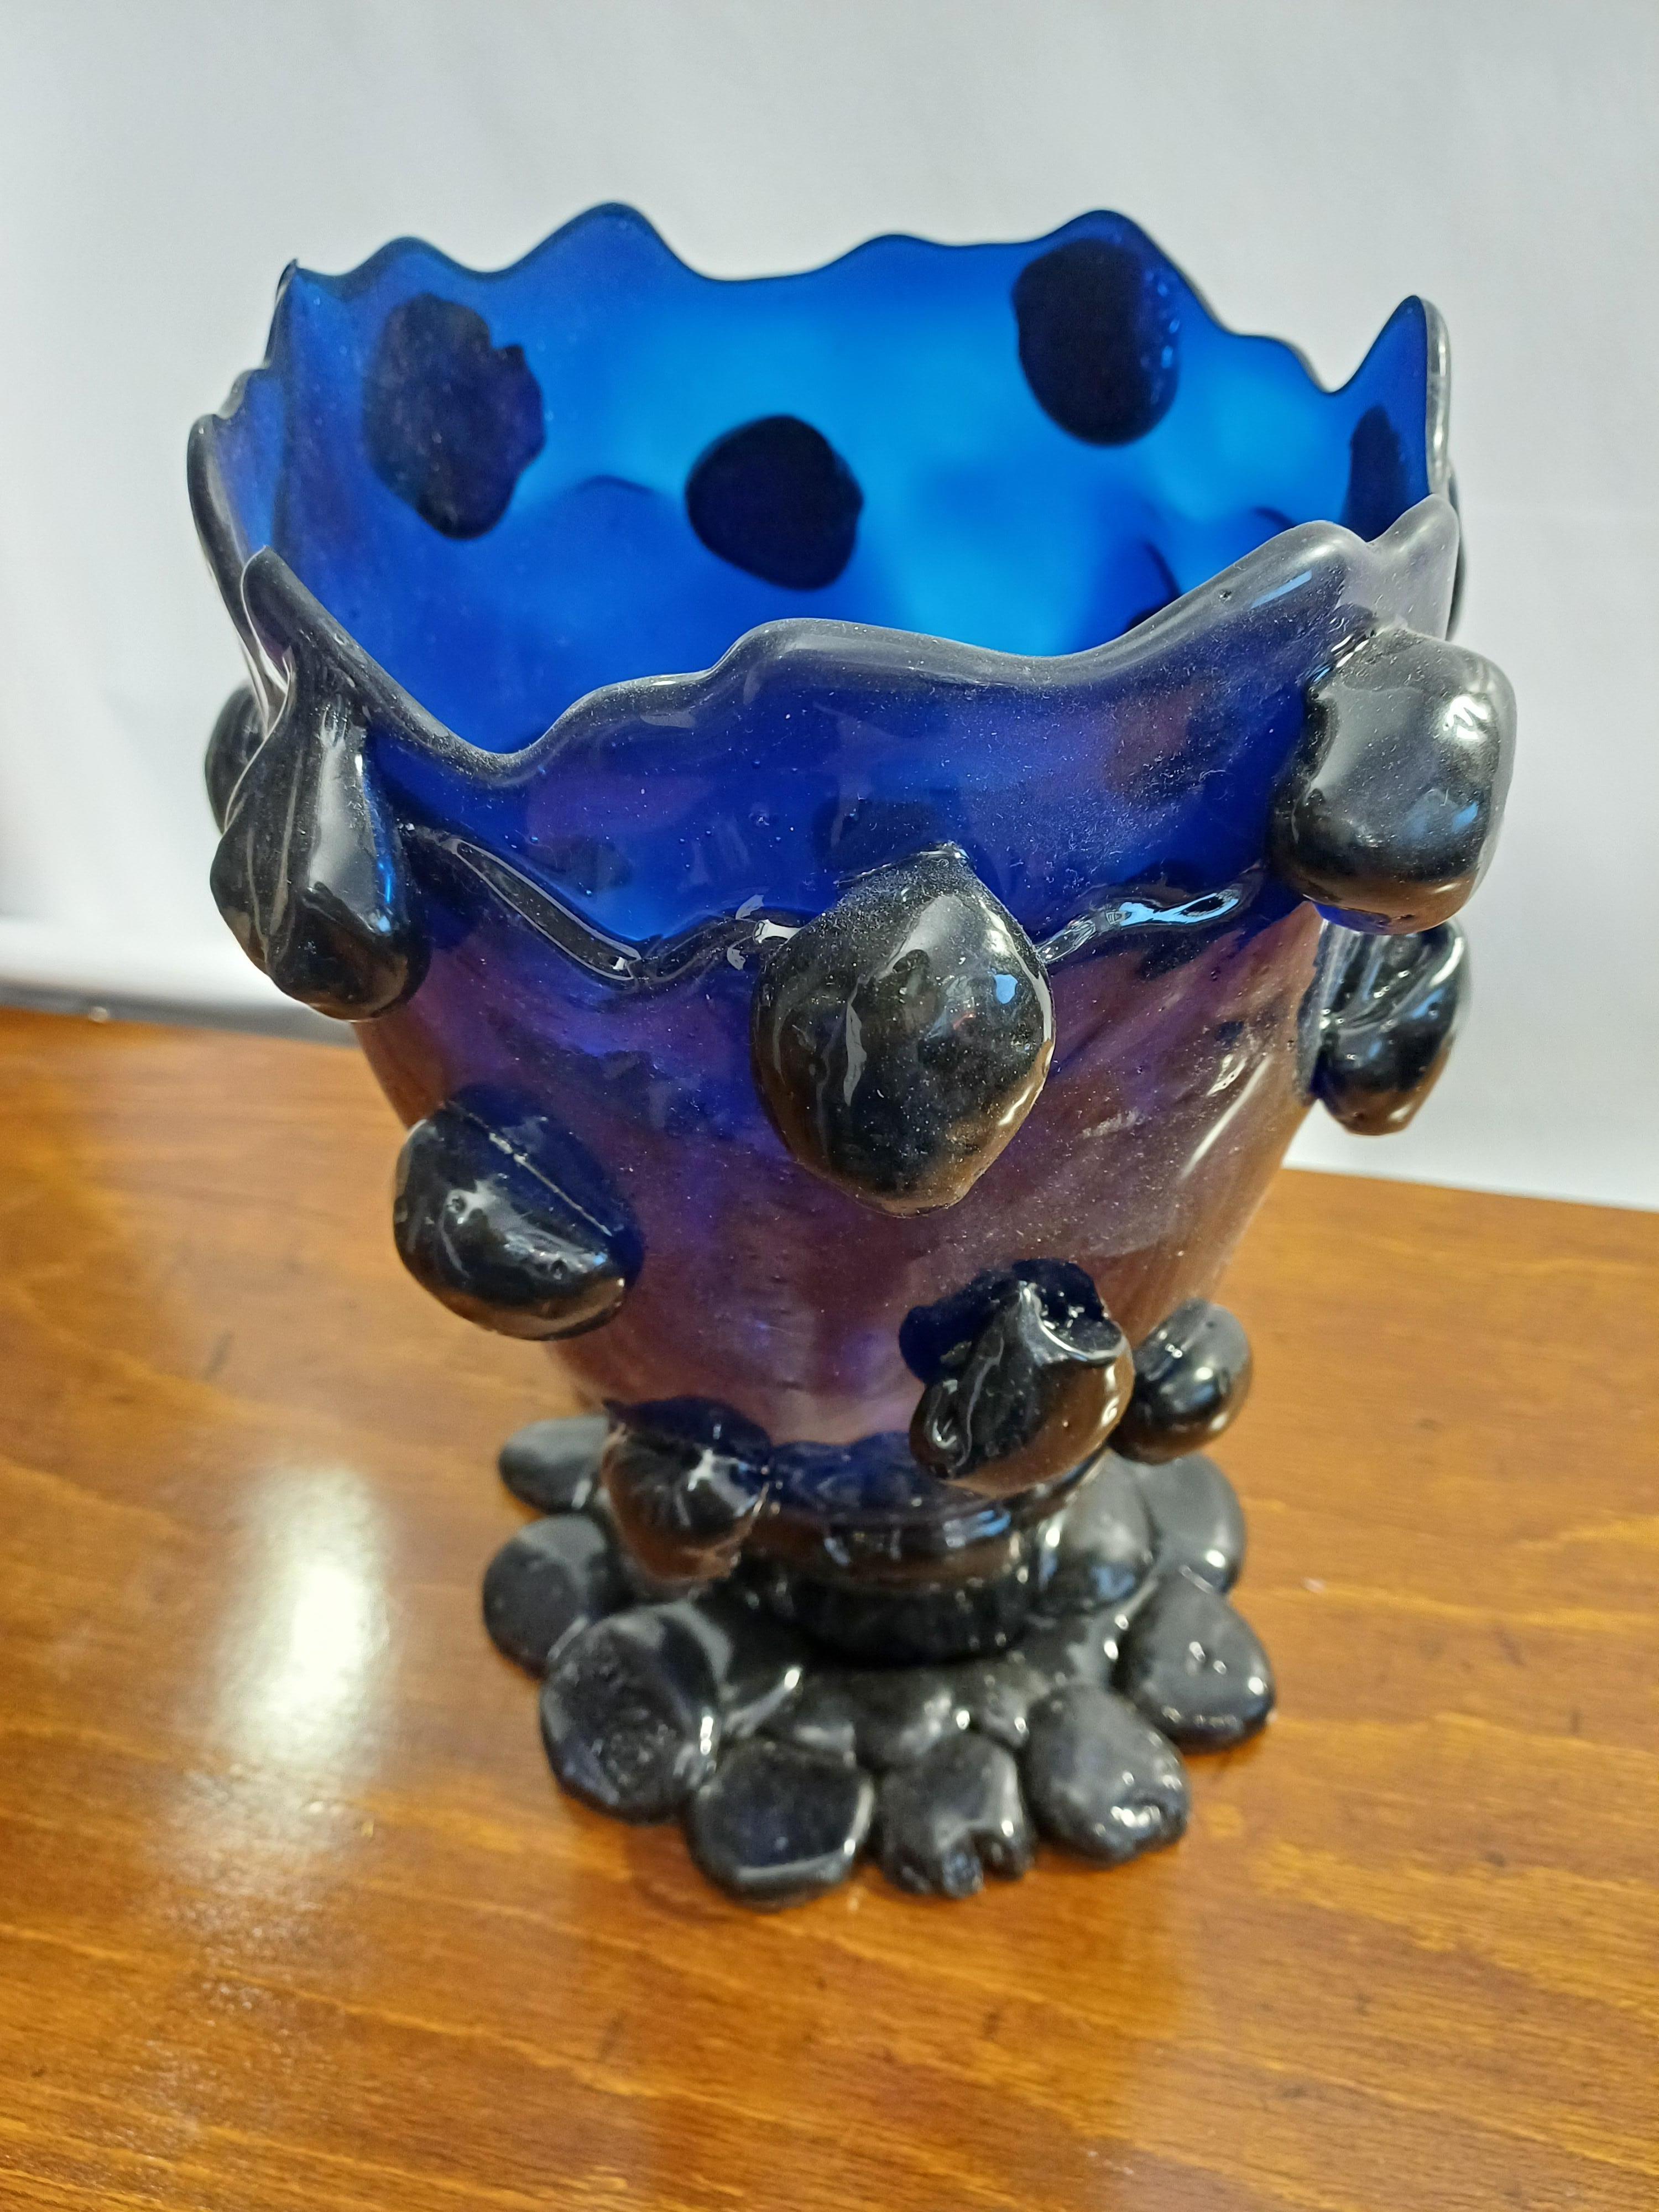 Vase en résine bleue conçu par Gaetano Pesce et produit par Fish Design Model Nugget
Marqué sur la base, avec certificat d'authenticité.
Dimensions : diamètre 18 cm, hauteur 27 cm